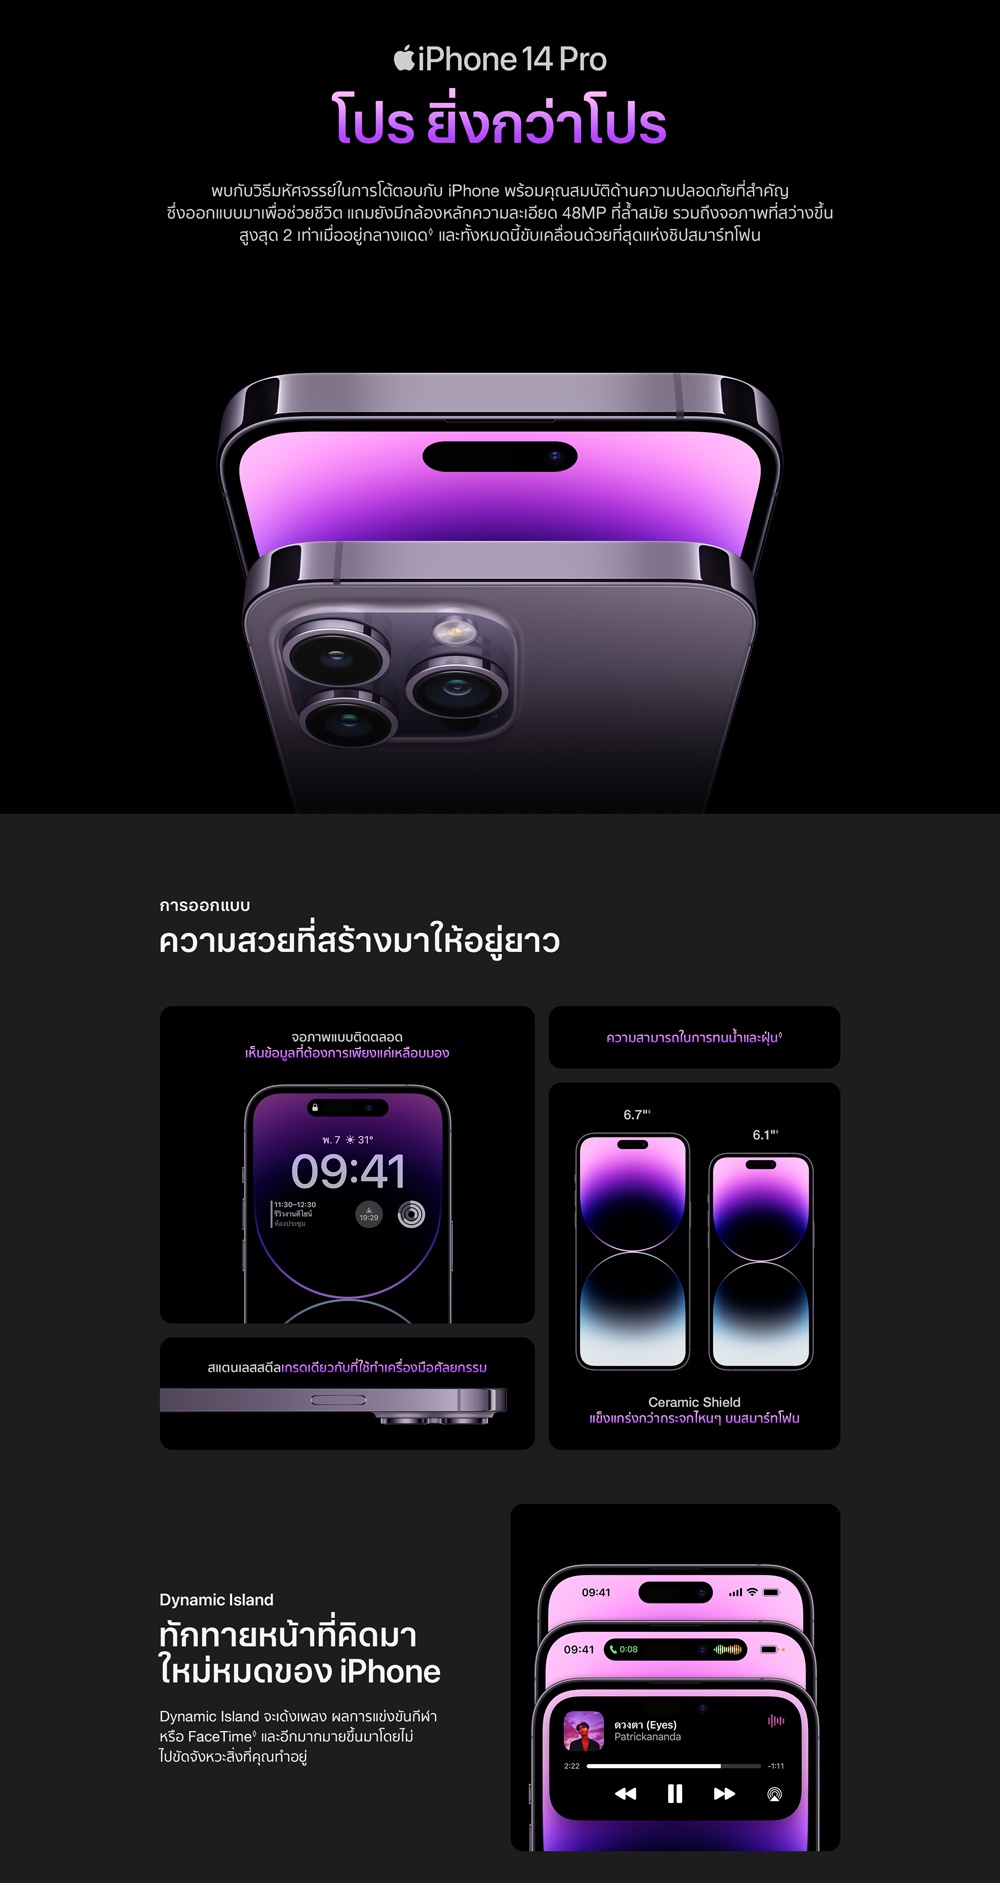 ภาพประกอบของ Apple iPhone 14 Pro Max by Studio 7